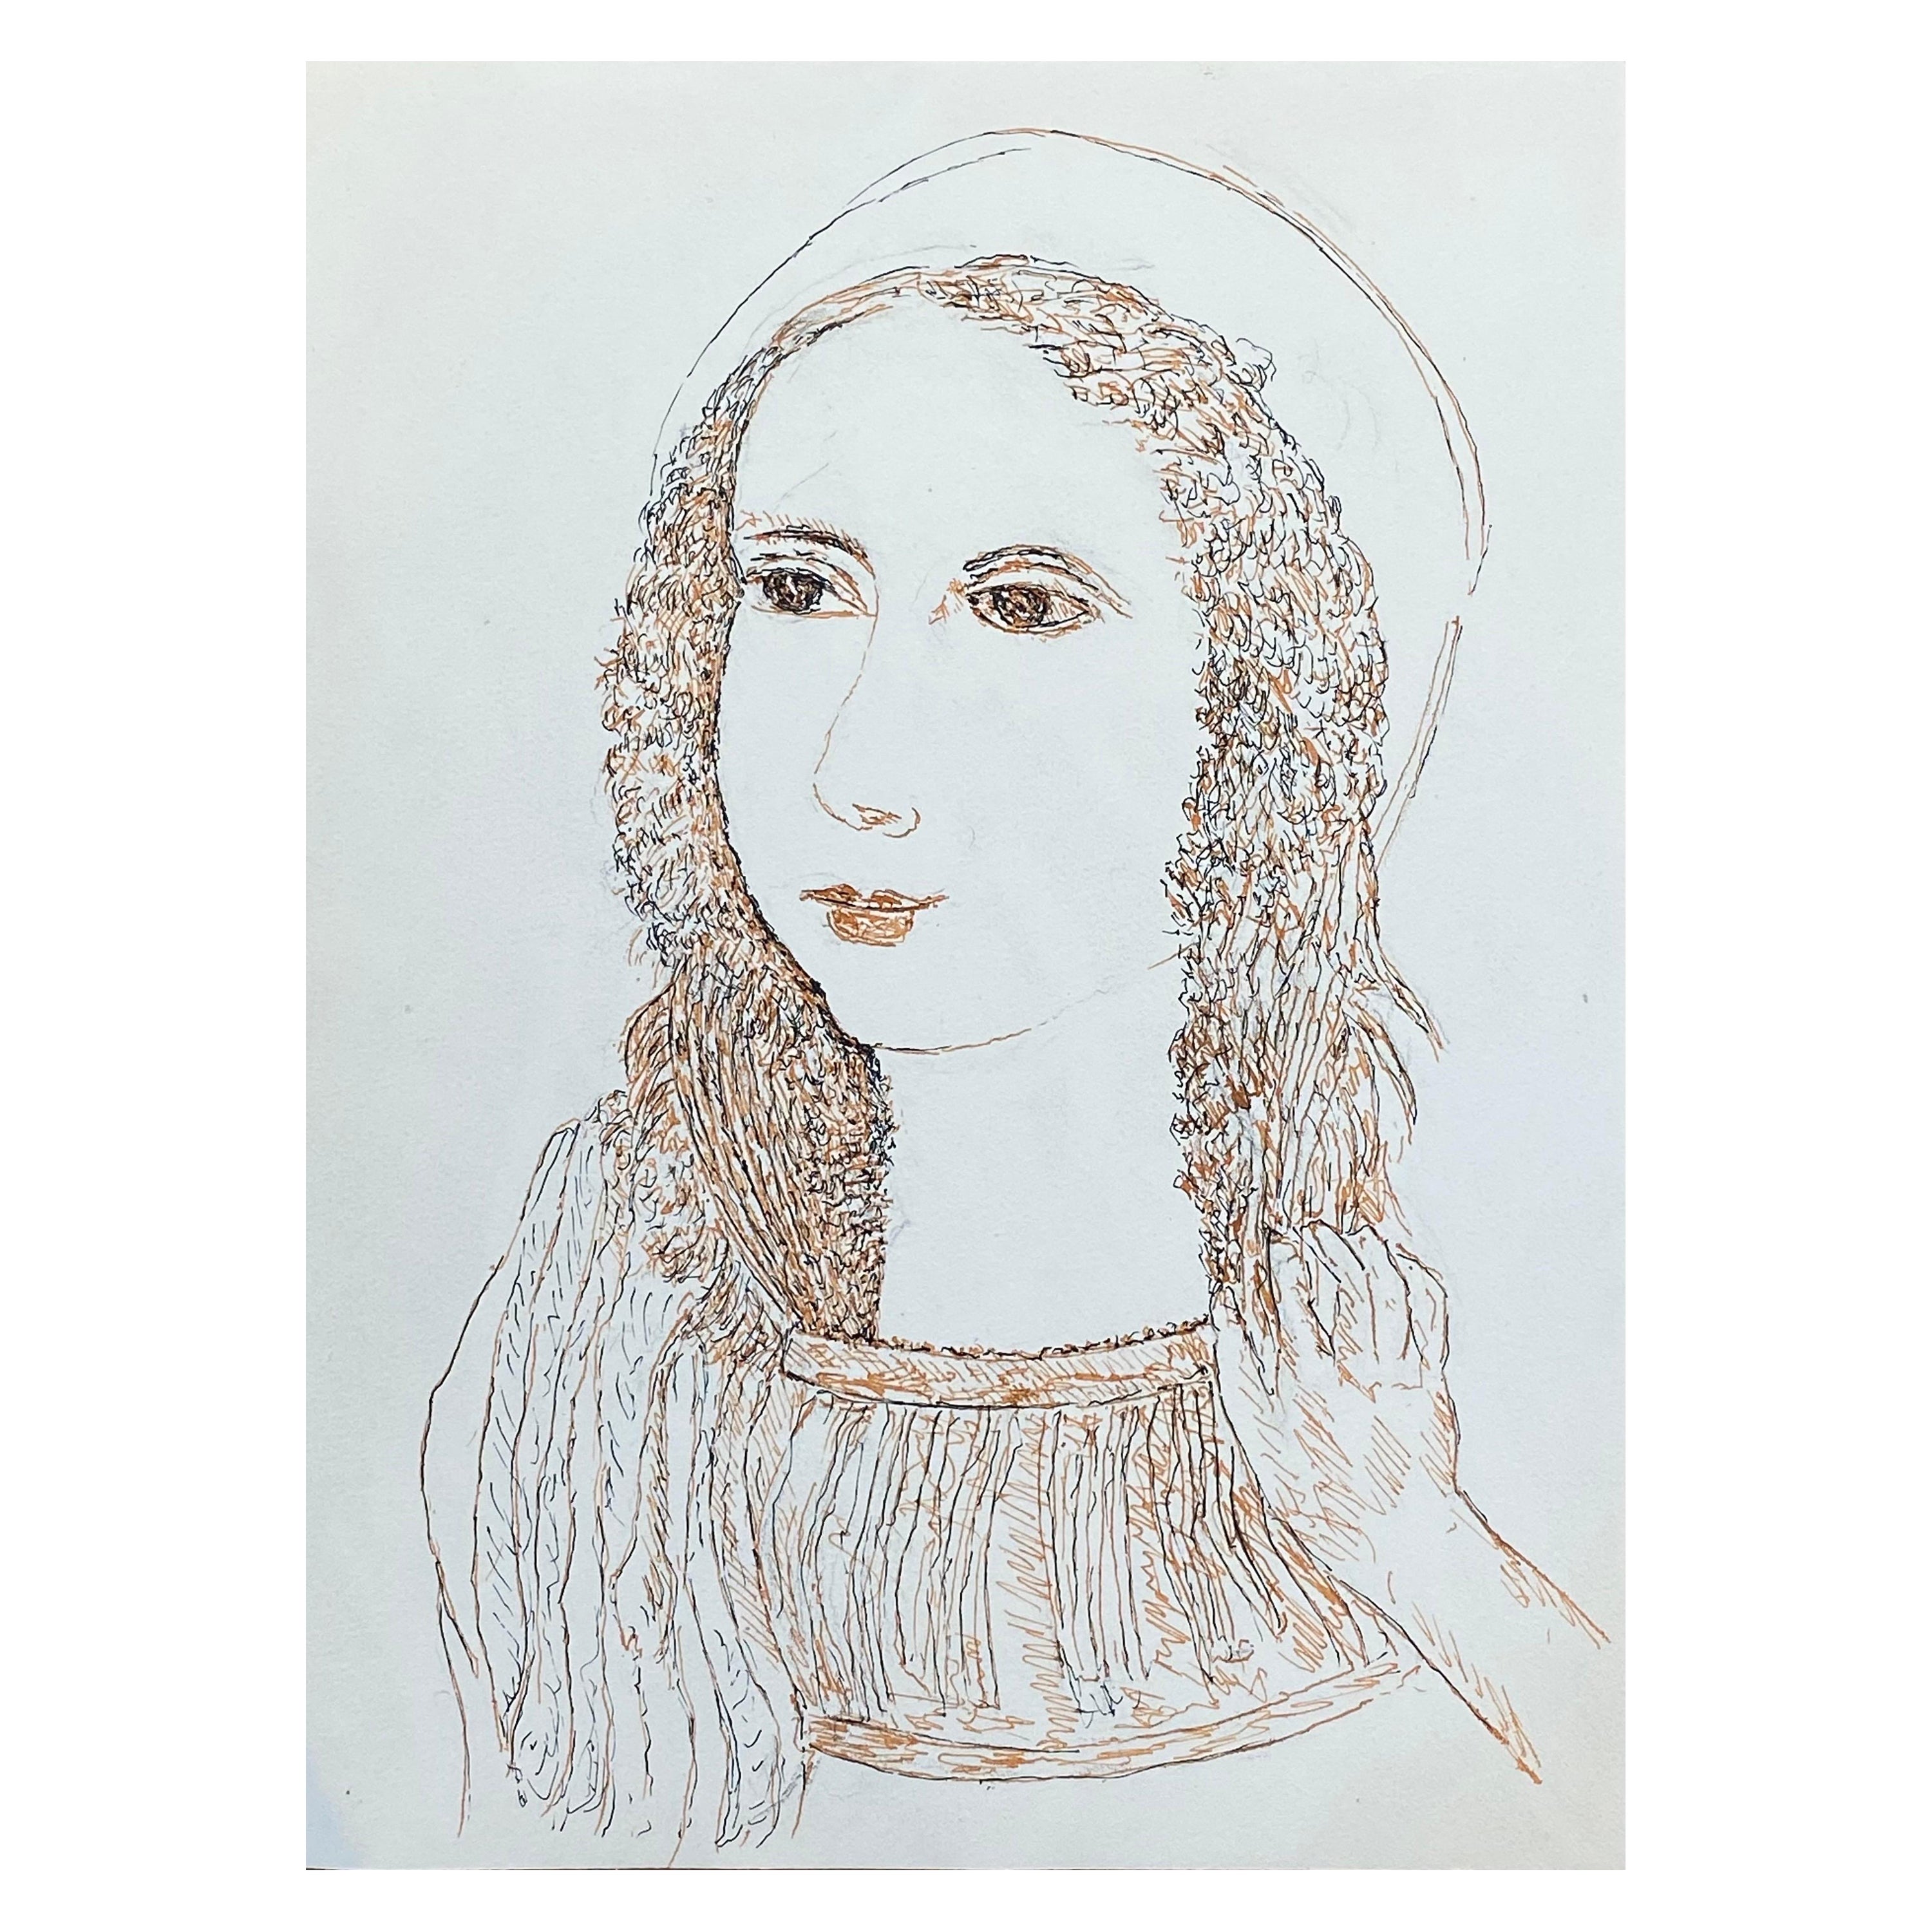 Französische modernistische/ kubistische Zeichnung aus den 1950er Jahren – Porträt einer Dame